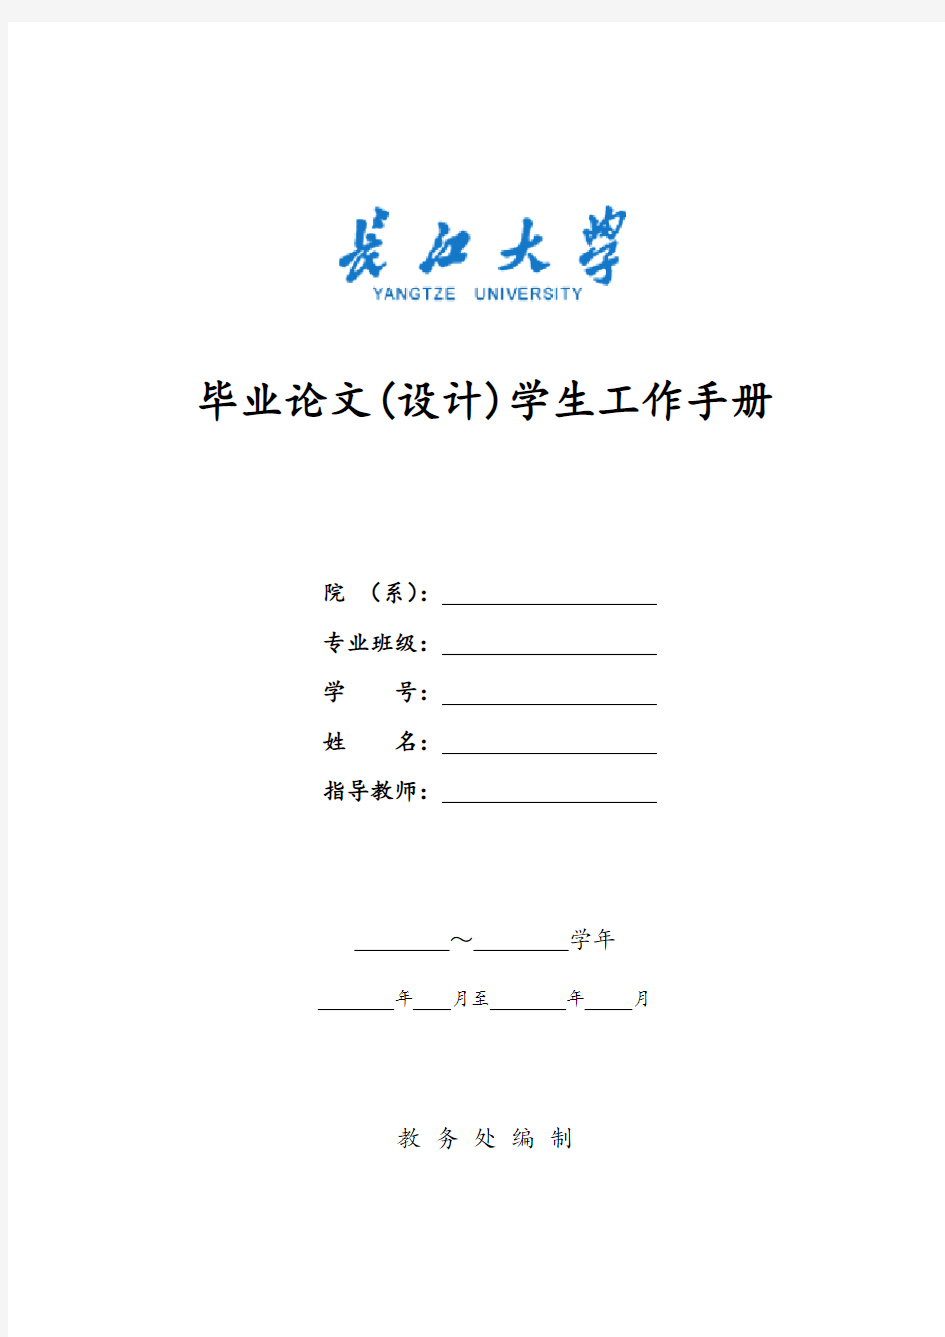 长江大学毕业设计学生工作手册